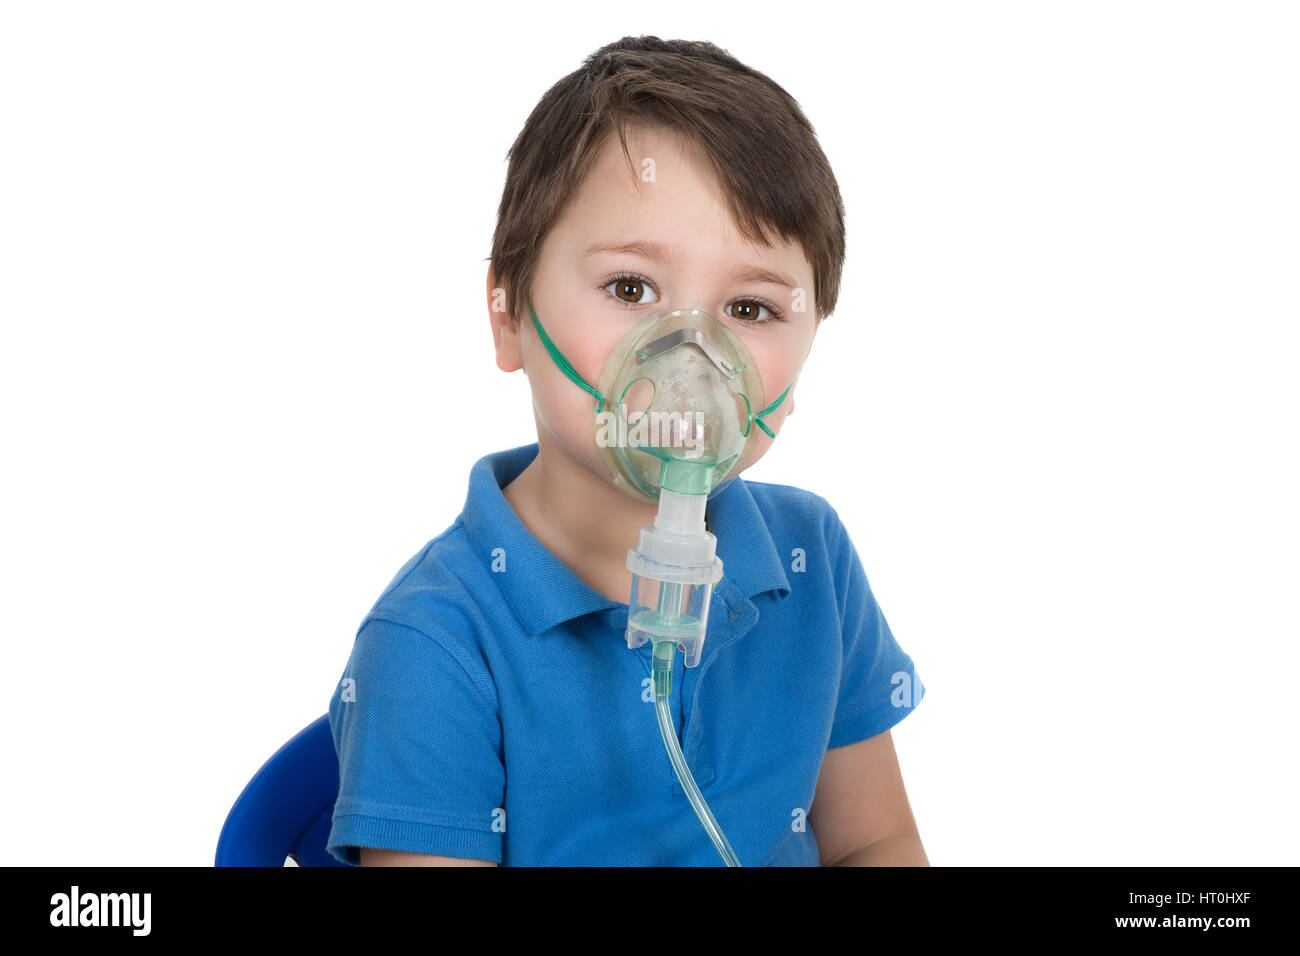 Asthmatischer junge haben eine medizinische Inhalation. Gesichtsmaske aus Vernebler Inhalator Maschine tragen. Isoliert auf weißem Hintergrund. Stockfoto